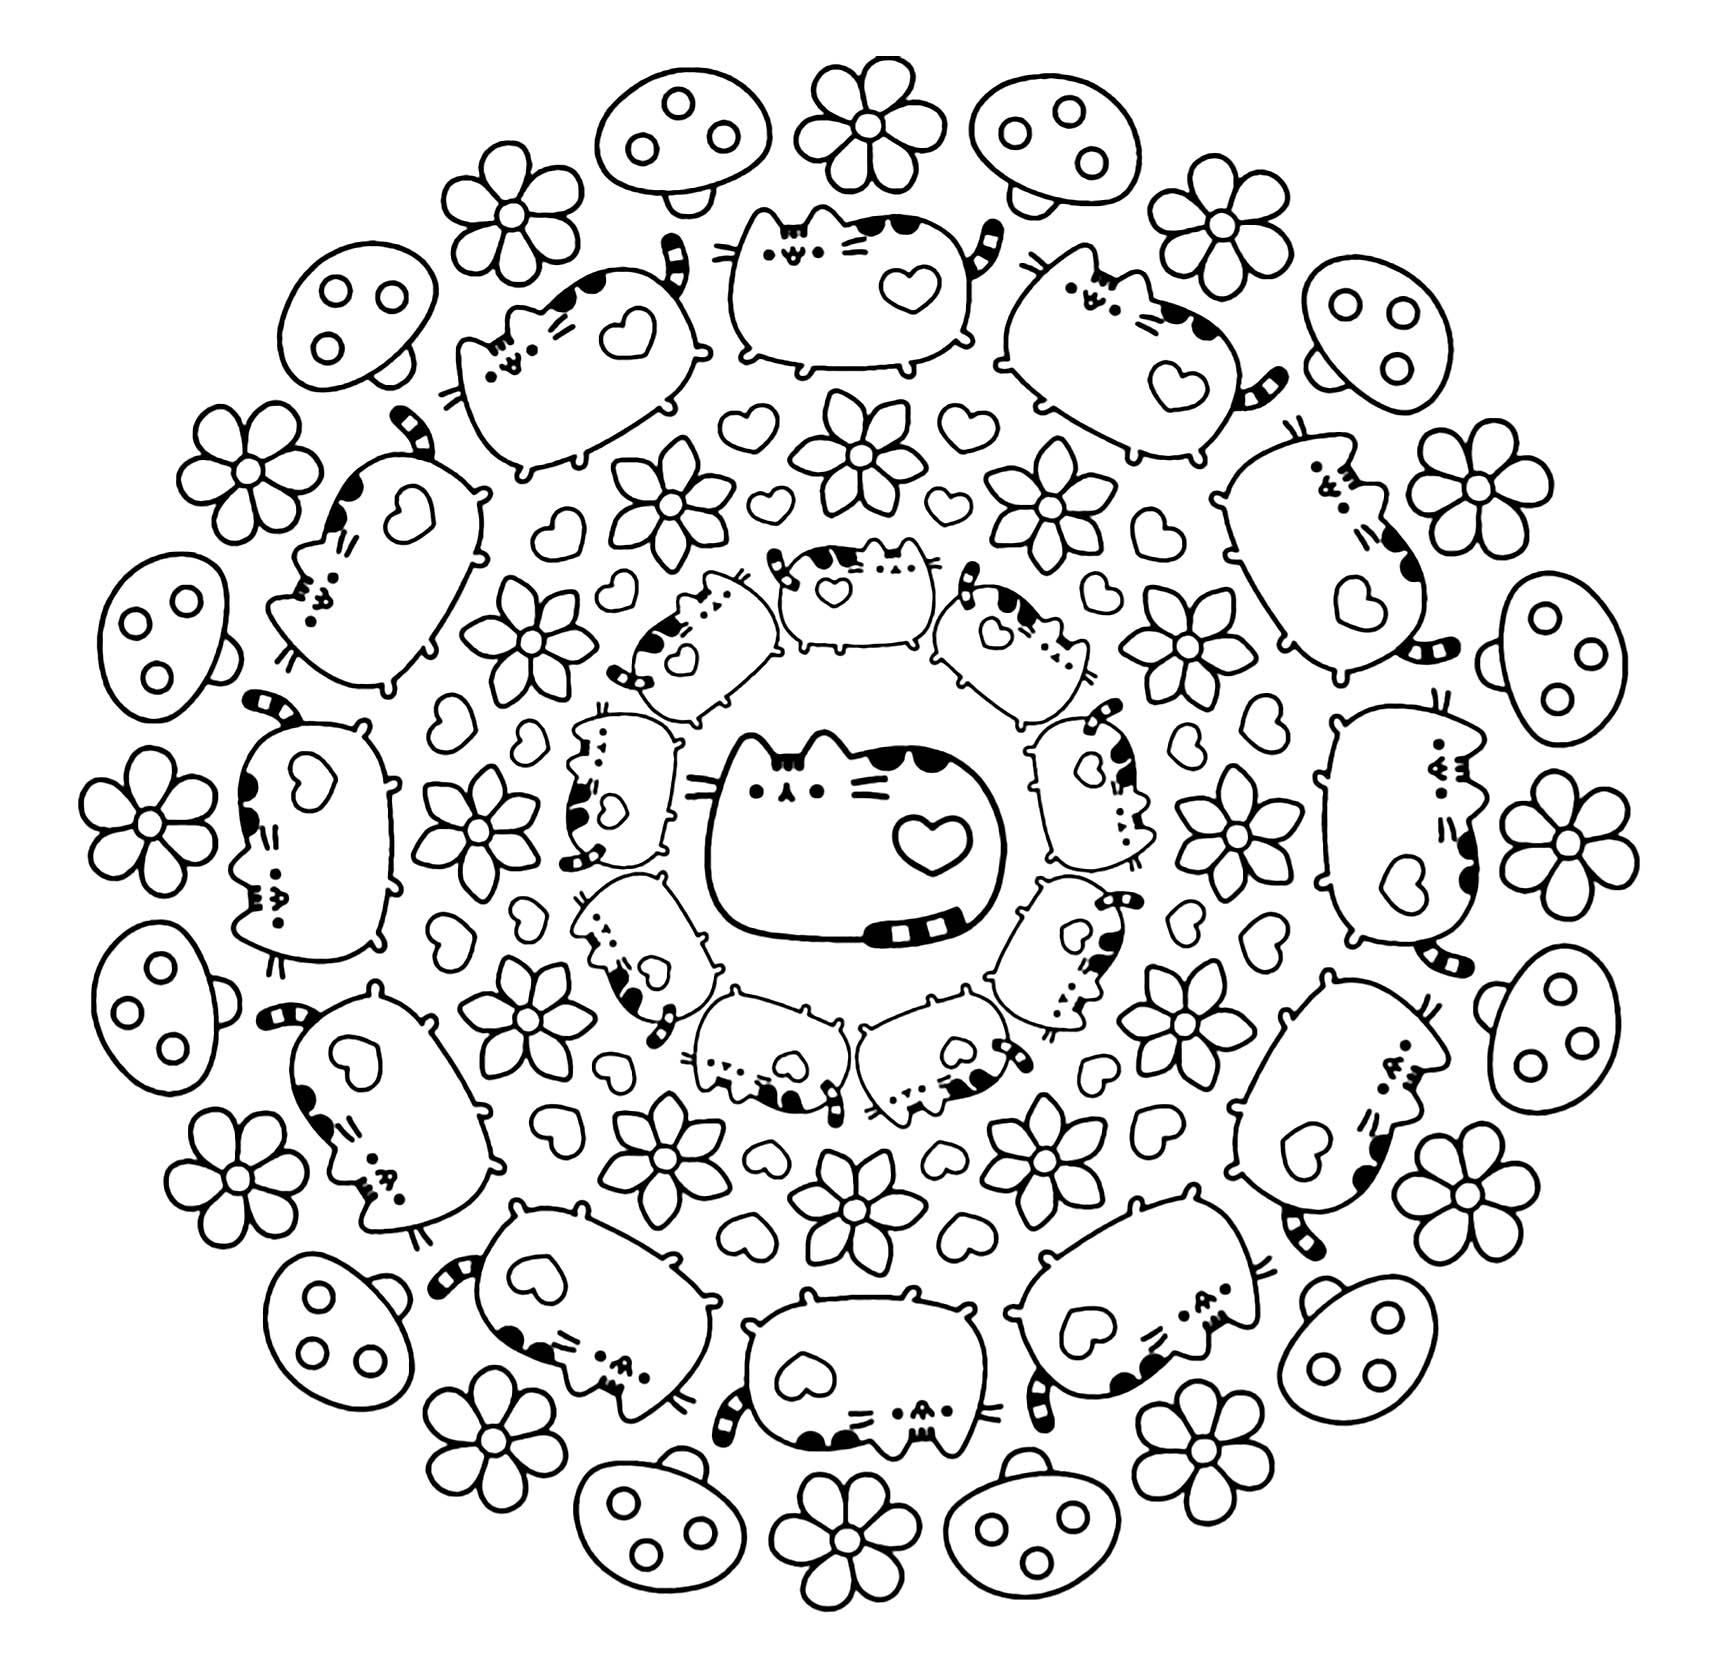 Cat Mandala Coloring Pages at GetColorings.com | Free printable